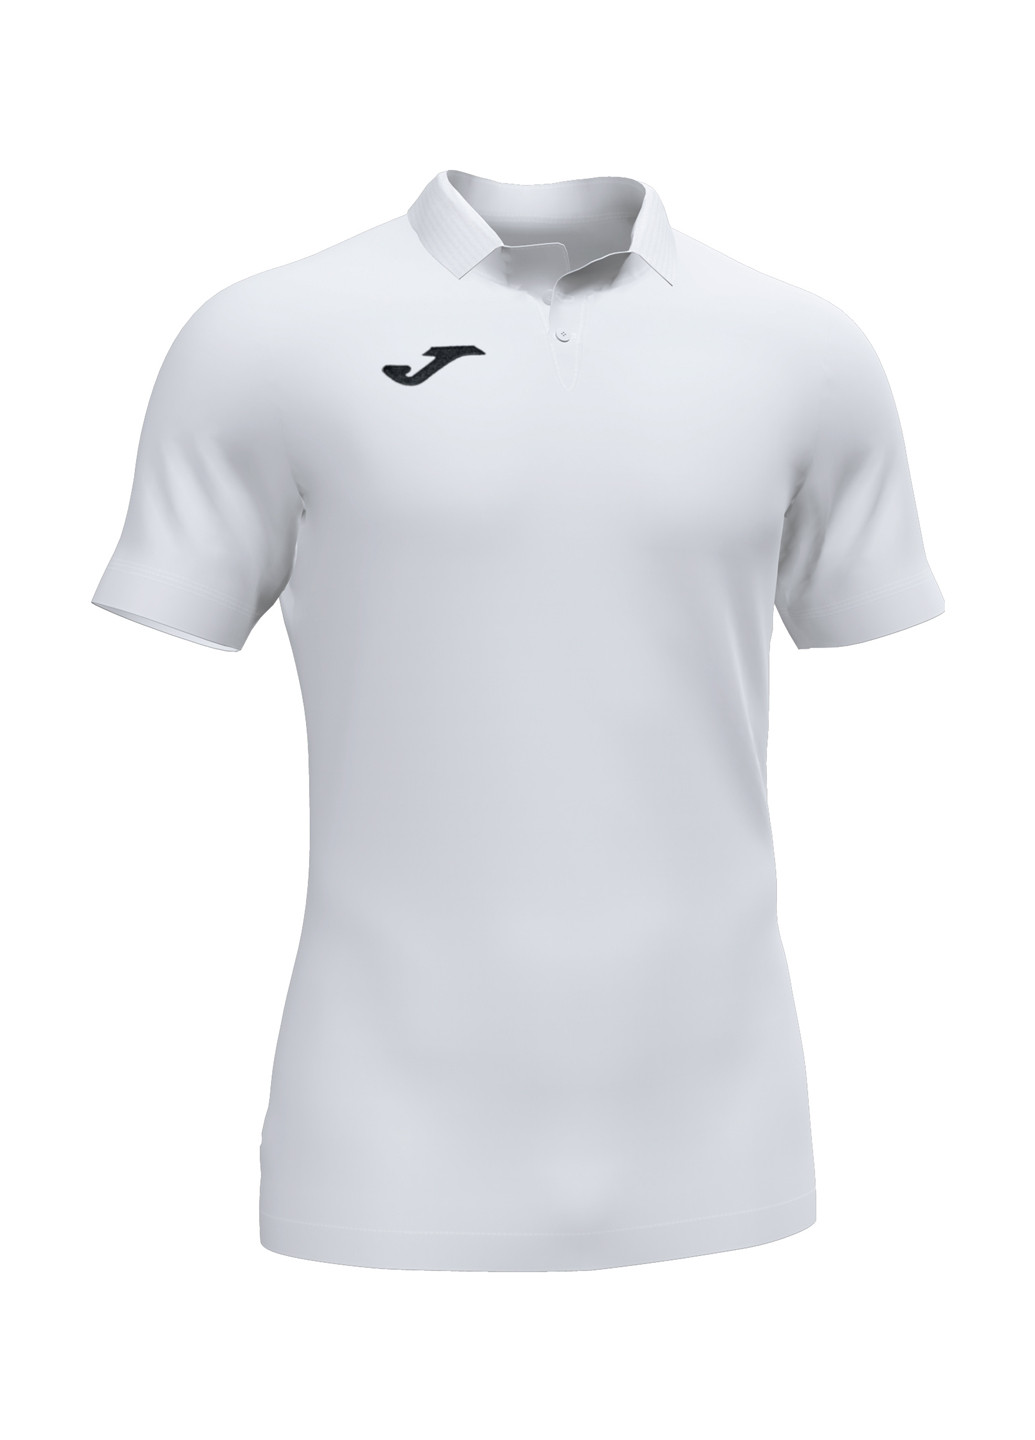 Белая футболка-поло для мужчин Joma однотонная